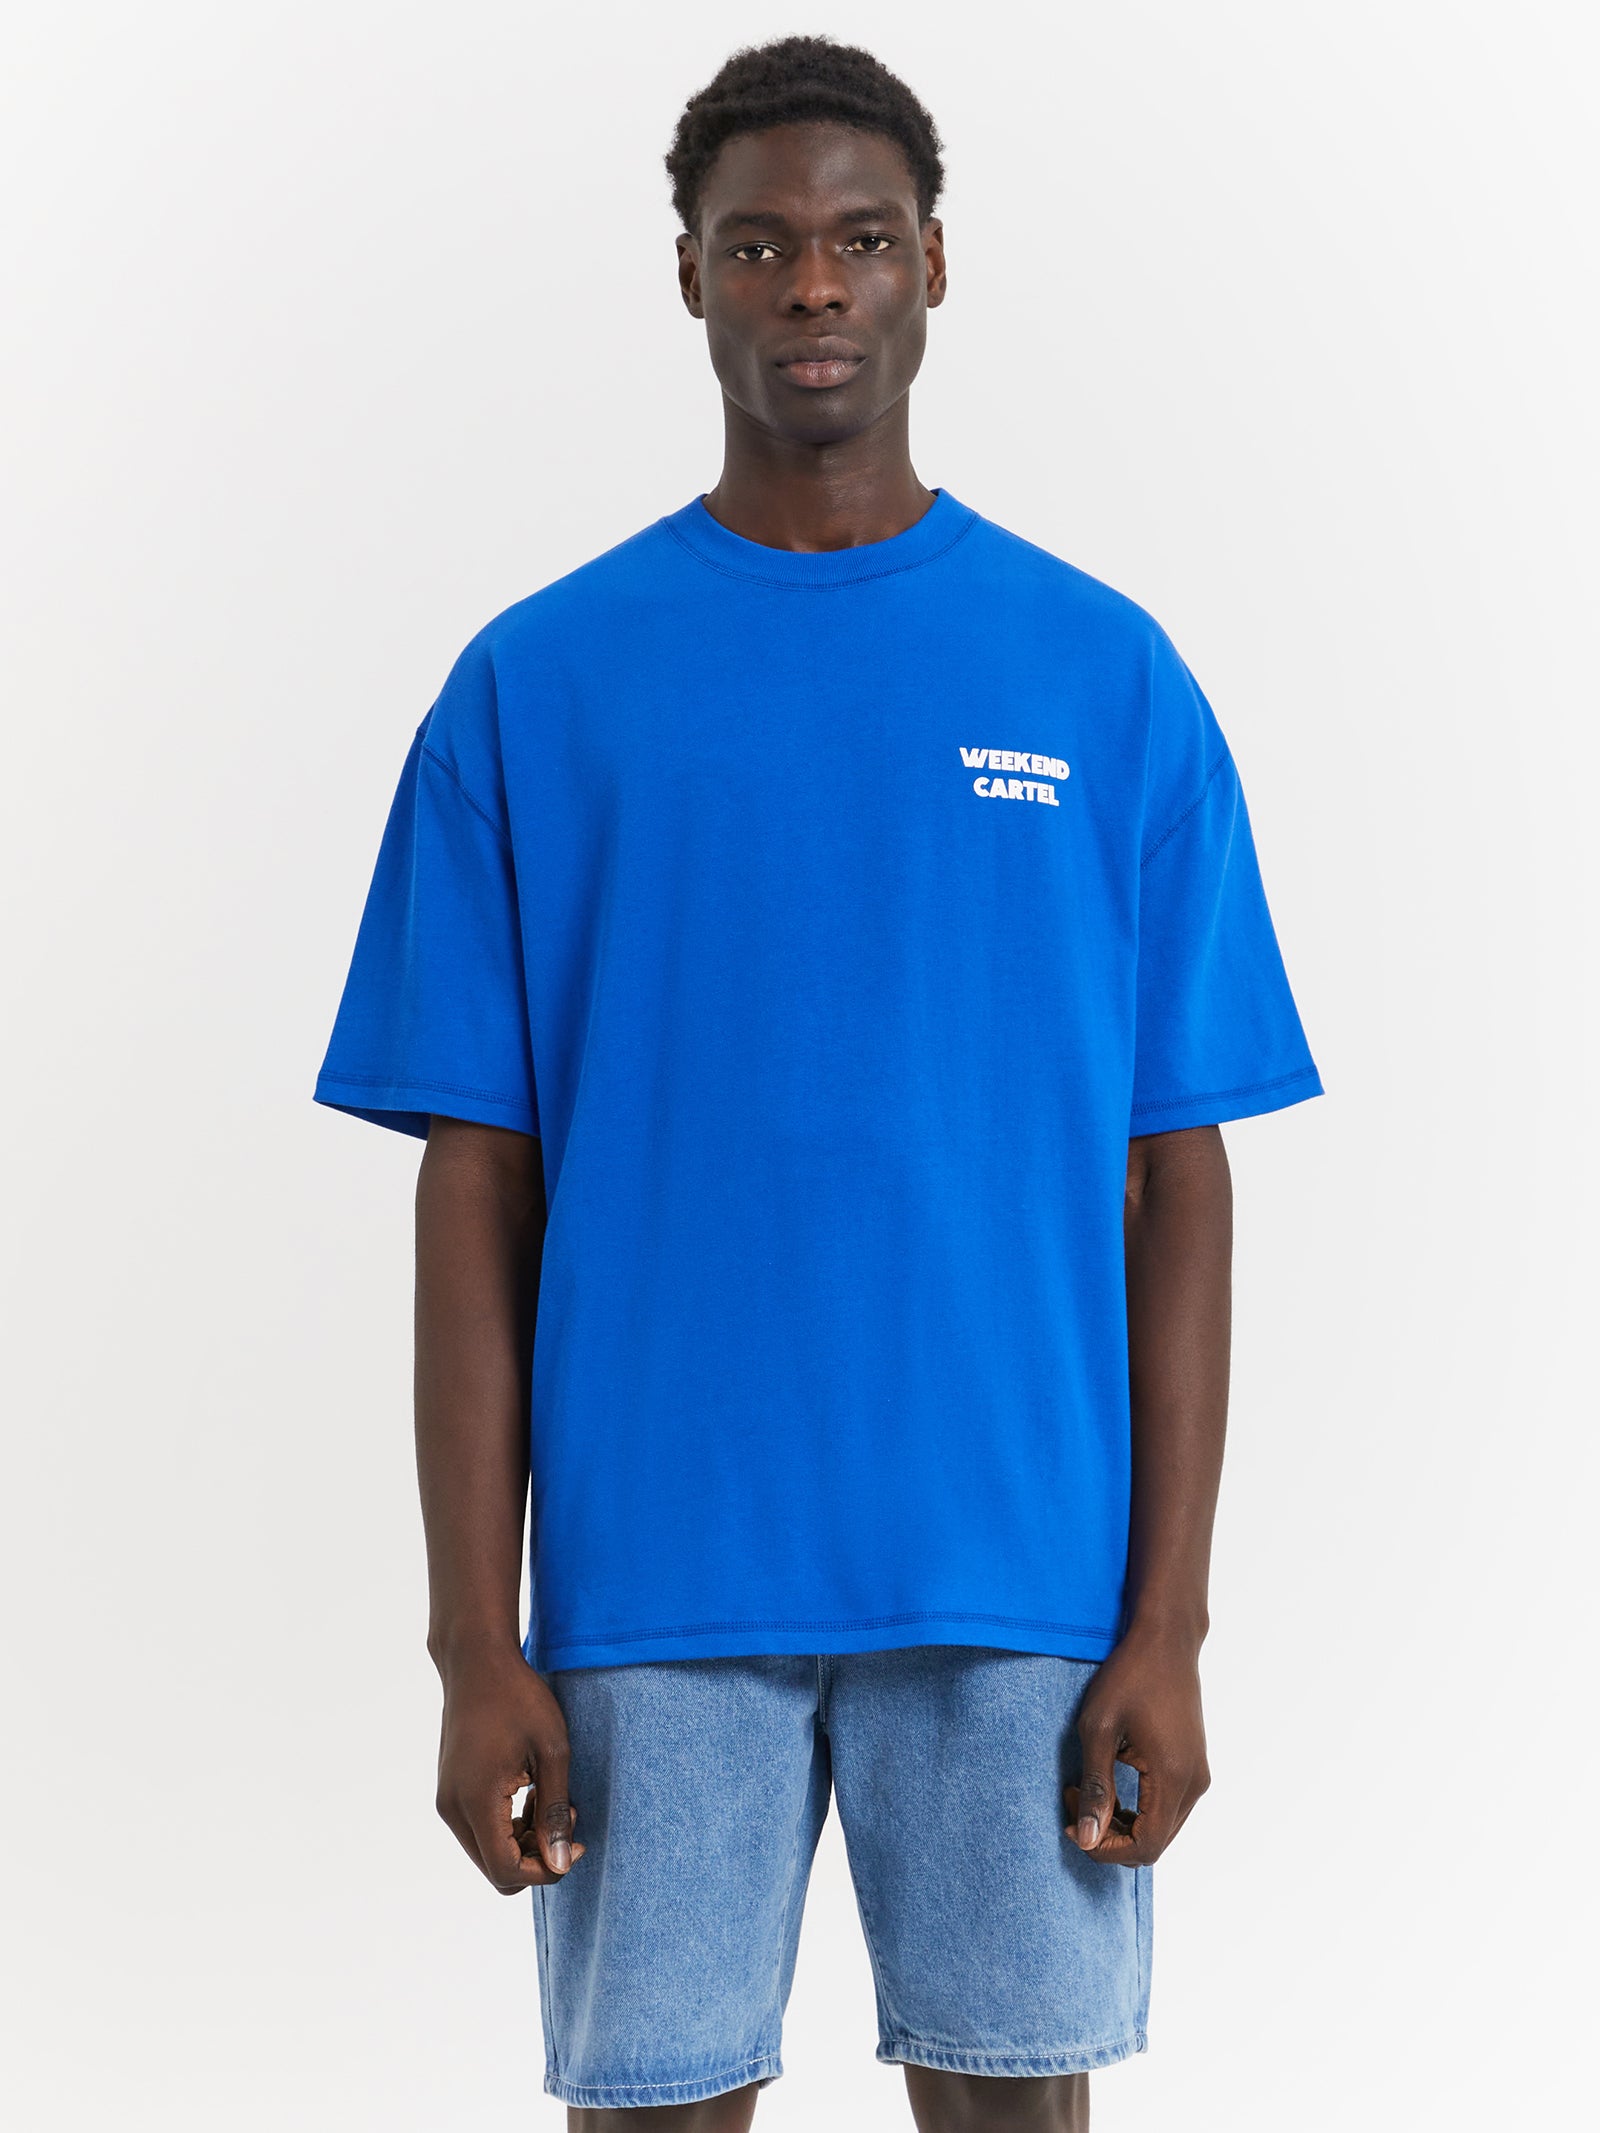 Pasta Chart T-Shirt in Cobalt